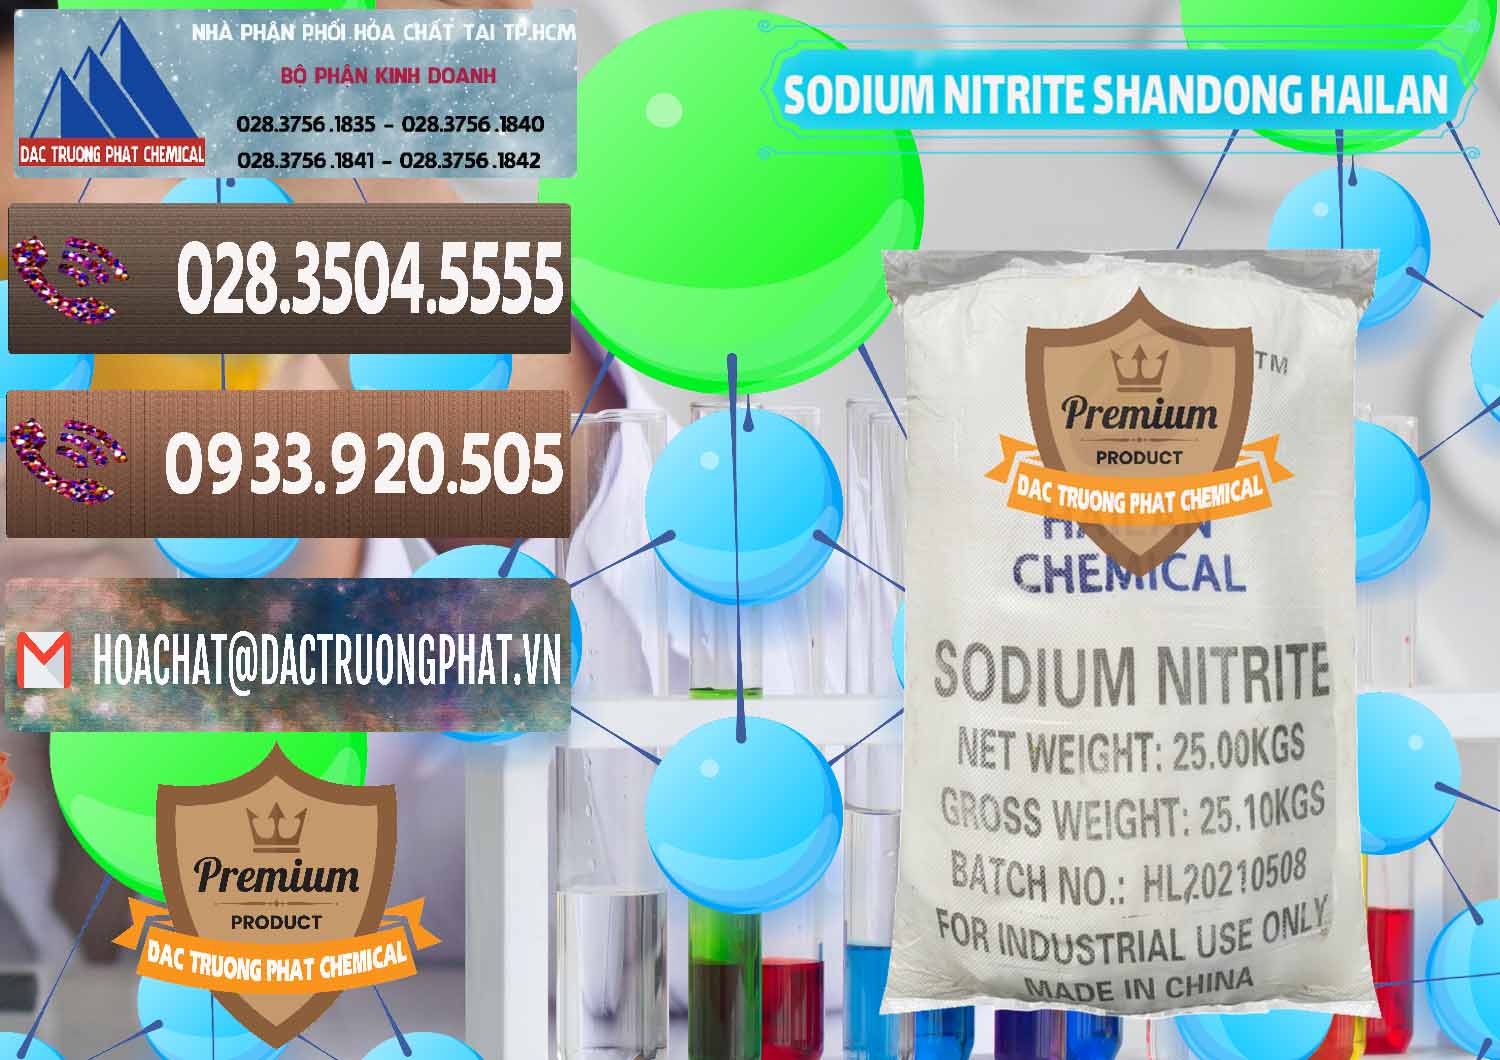 Cty chuyên bán _ phân phối Sodium Nitrite - NANO2 99.3% Shandong Hailan Trung Quốc China - 0284 - Nhà cung ứng _ phân phối hóa chất tại TP.HCM - hoachatviet.net